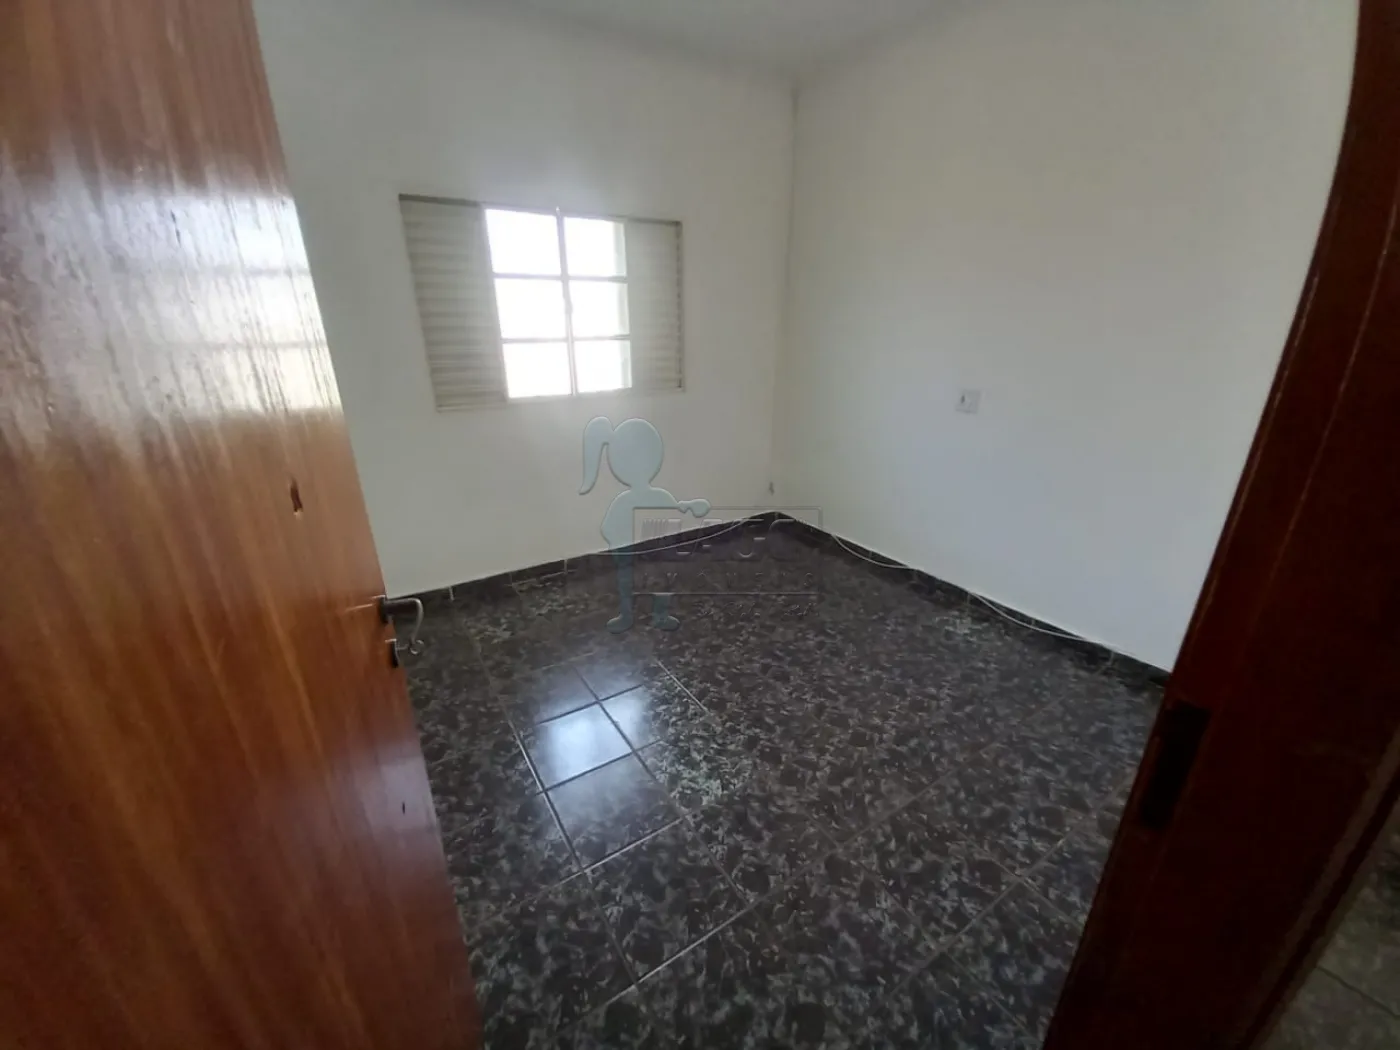 Alugar Casas / Padrão em Ribeirão Preto R$ 1.700,00 - Foto 9